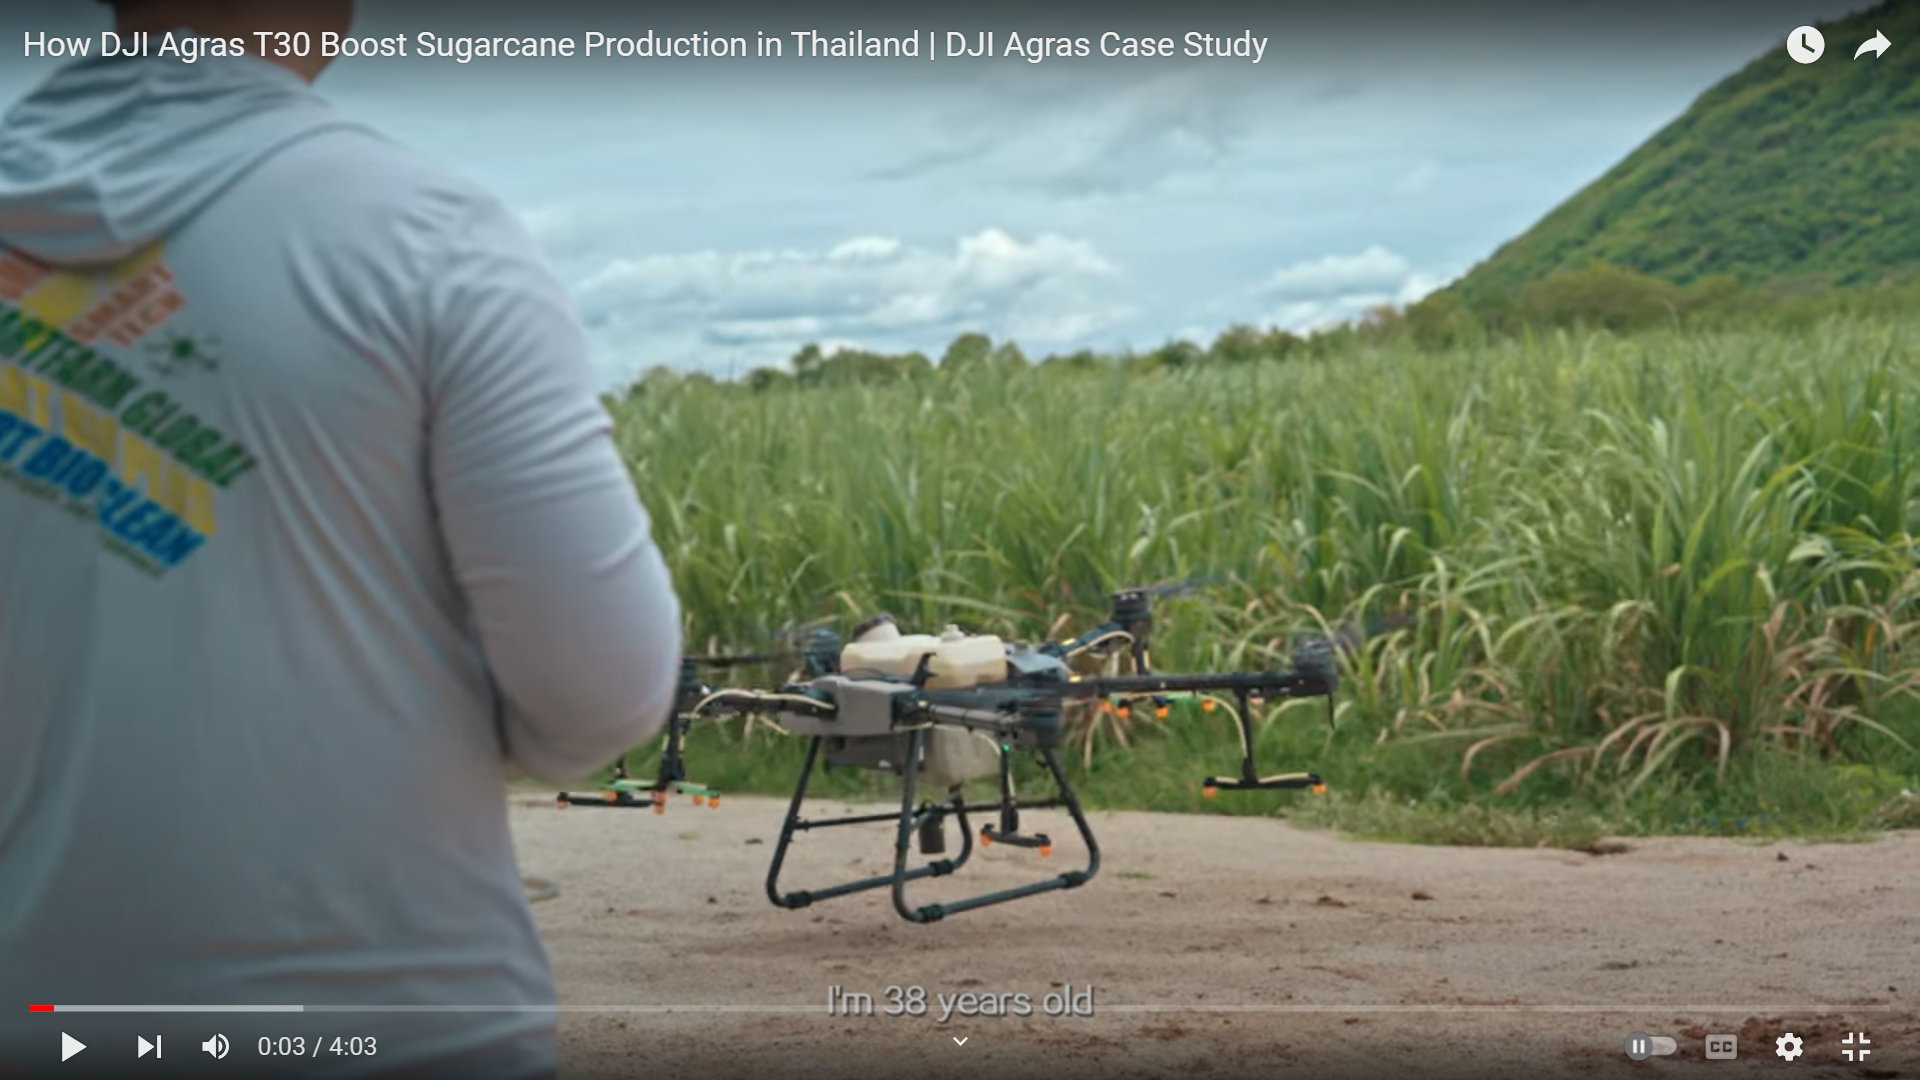 فیلم: افزایش تولید نیشکر با استفاده از پهپاد در تایلند